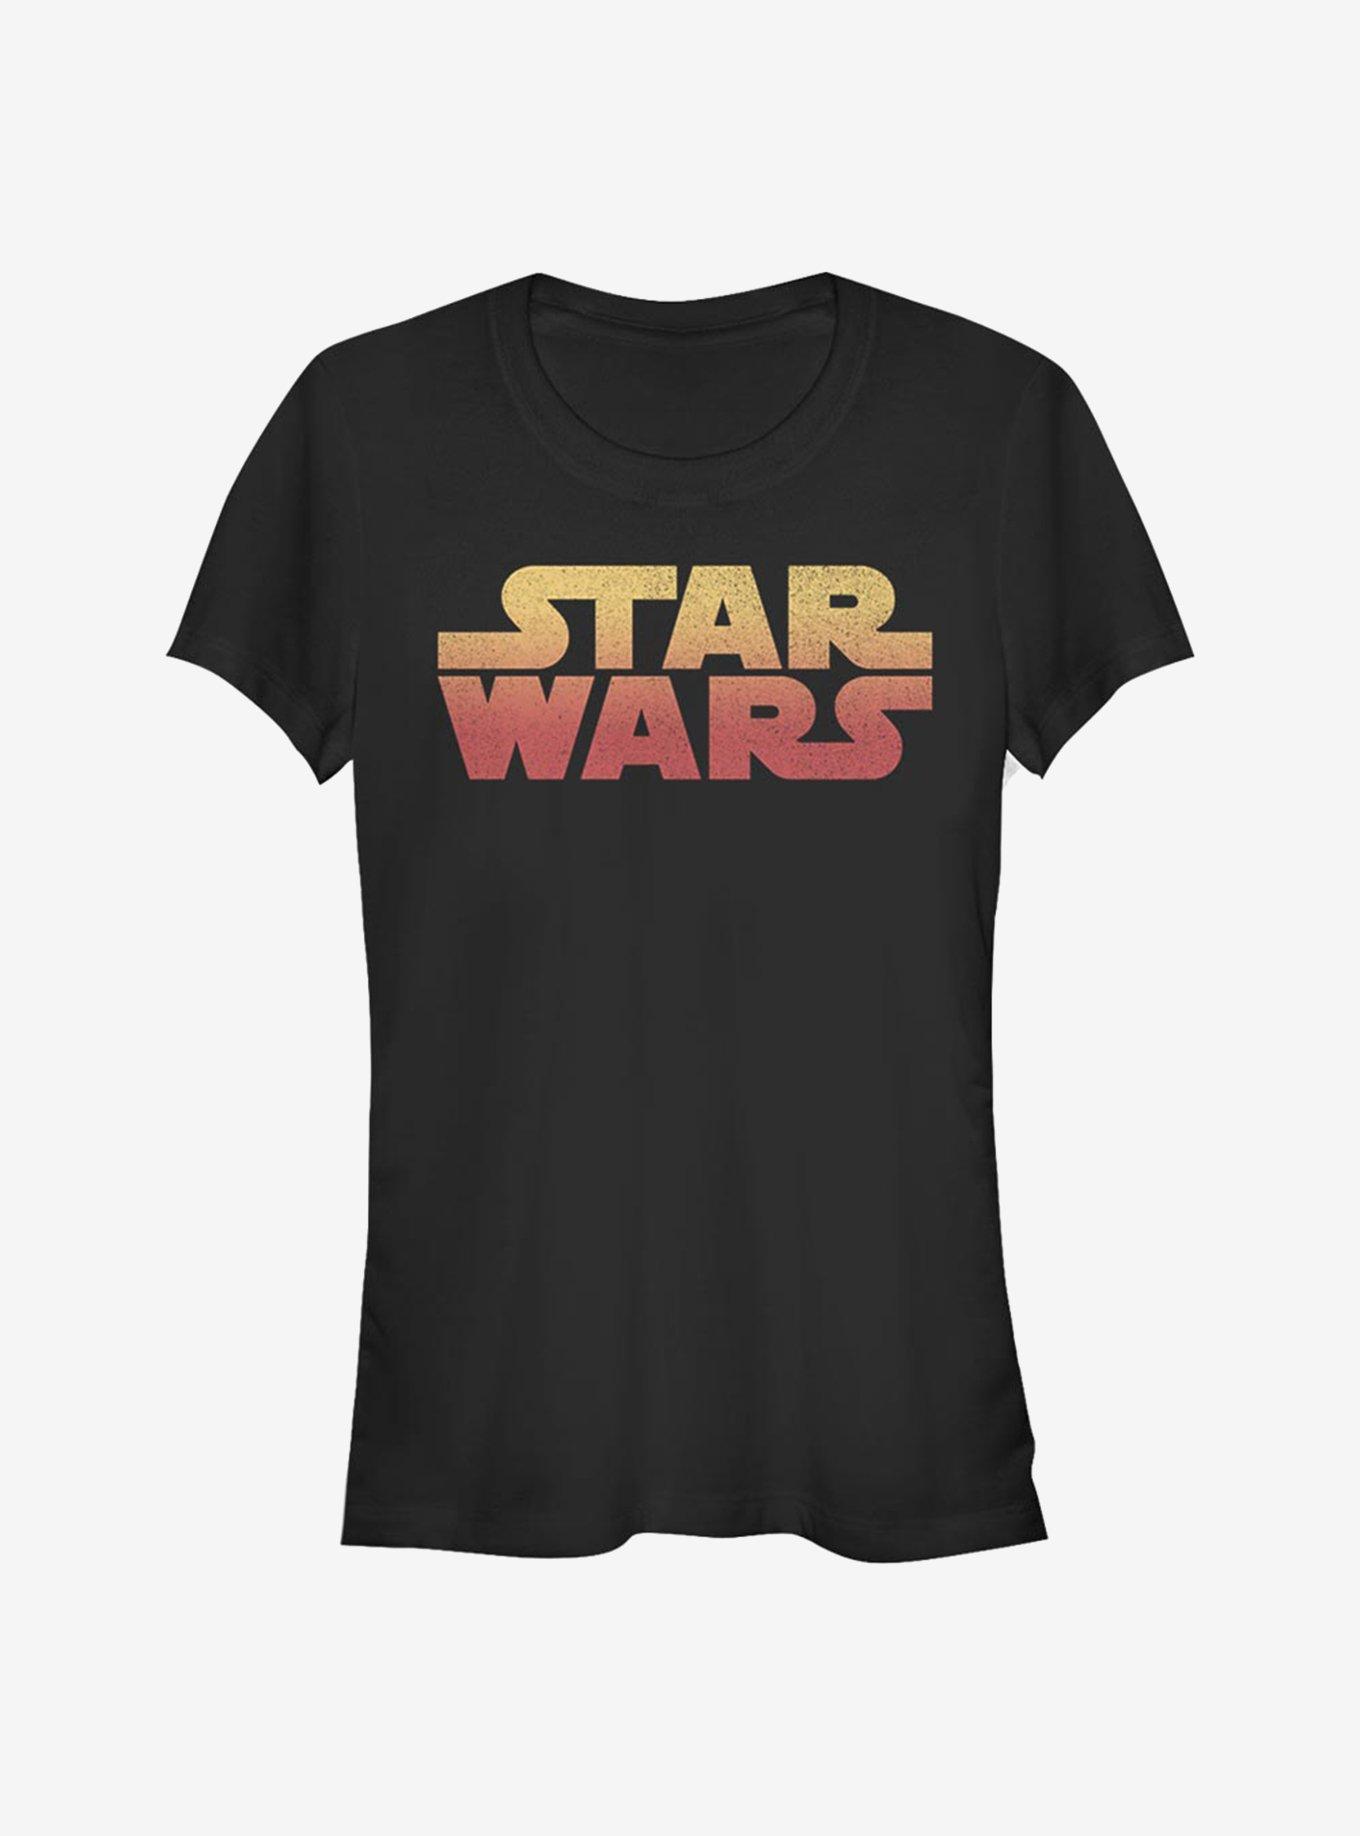 Star Wars Sunset Girls T-Shirt